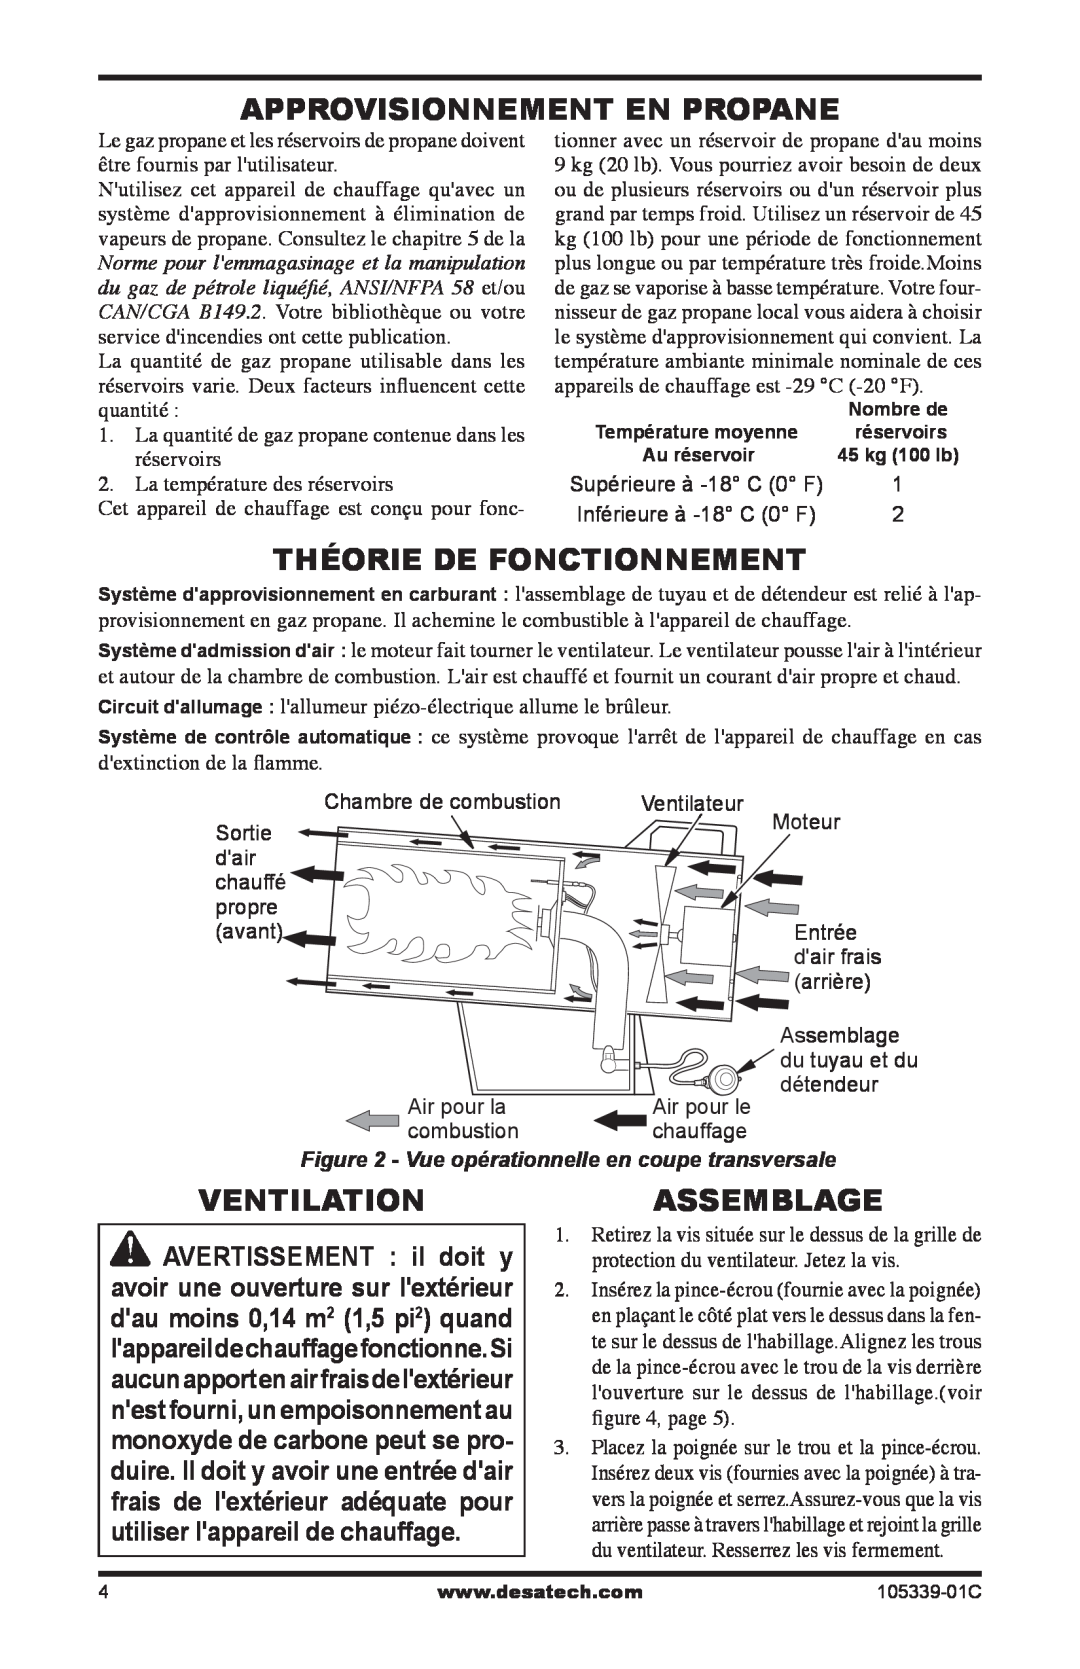 Desa RCLP50-F owner manual Approvisionnement En Propane, Théorie De Fonctionnement, Ventilation, Assemblage 